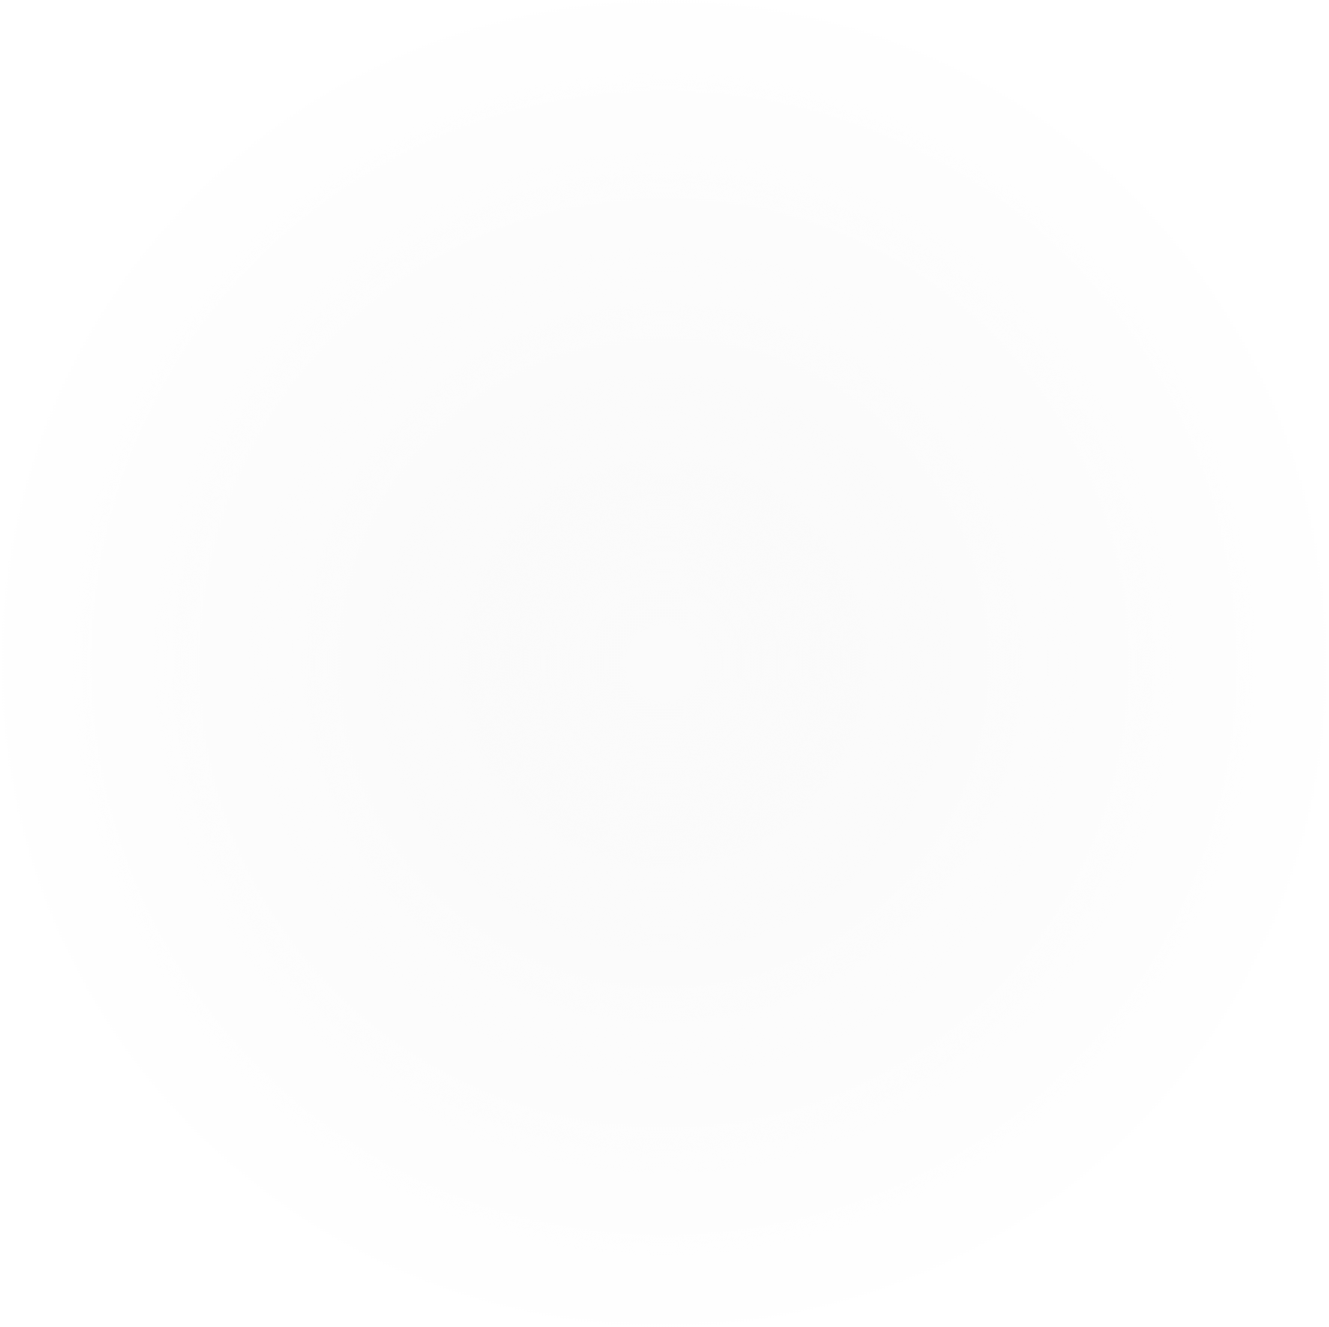 White transparent gradient